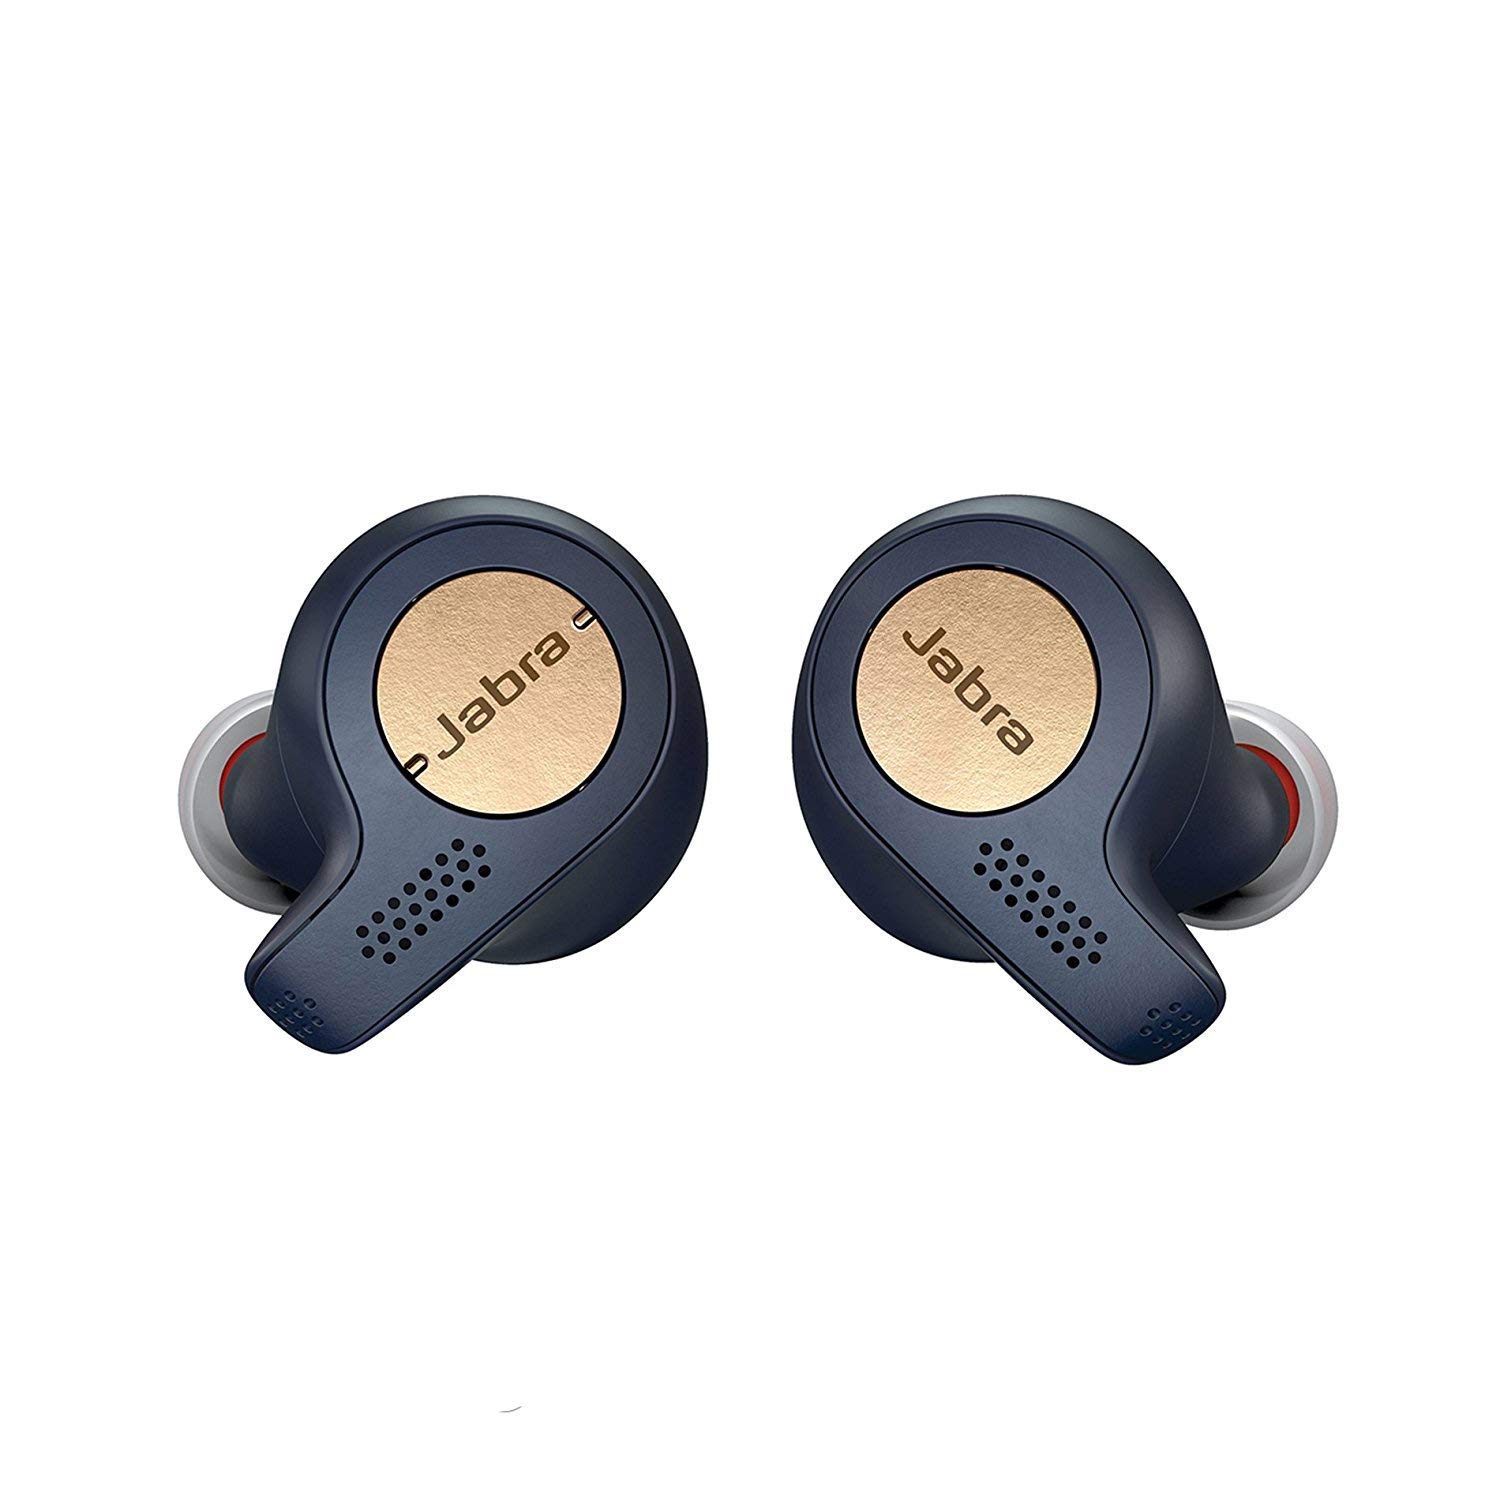 jabra-elite-65t-wireless-earbuds.jpg?ito